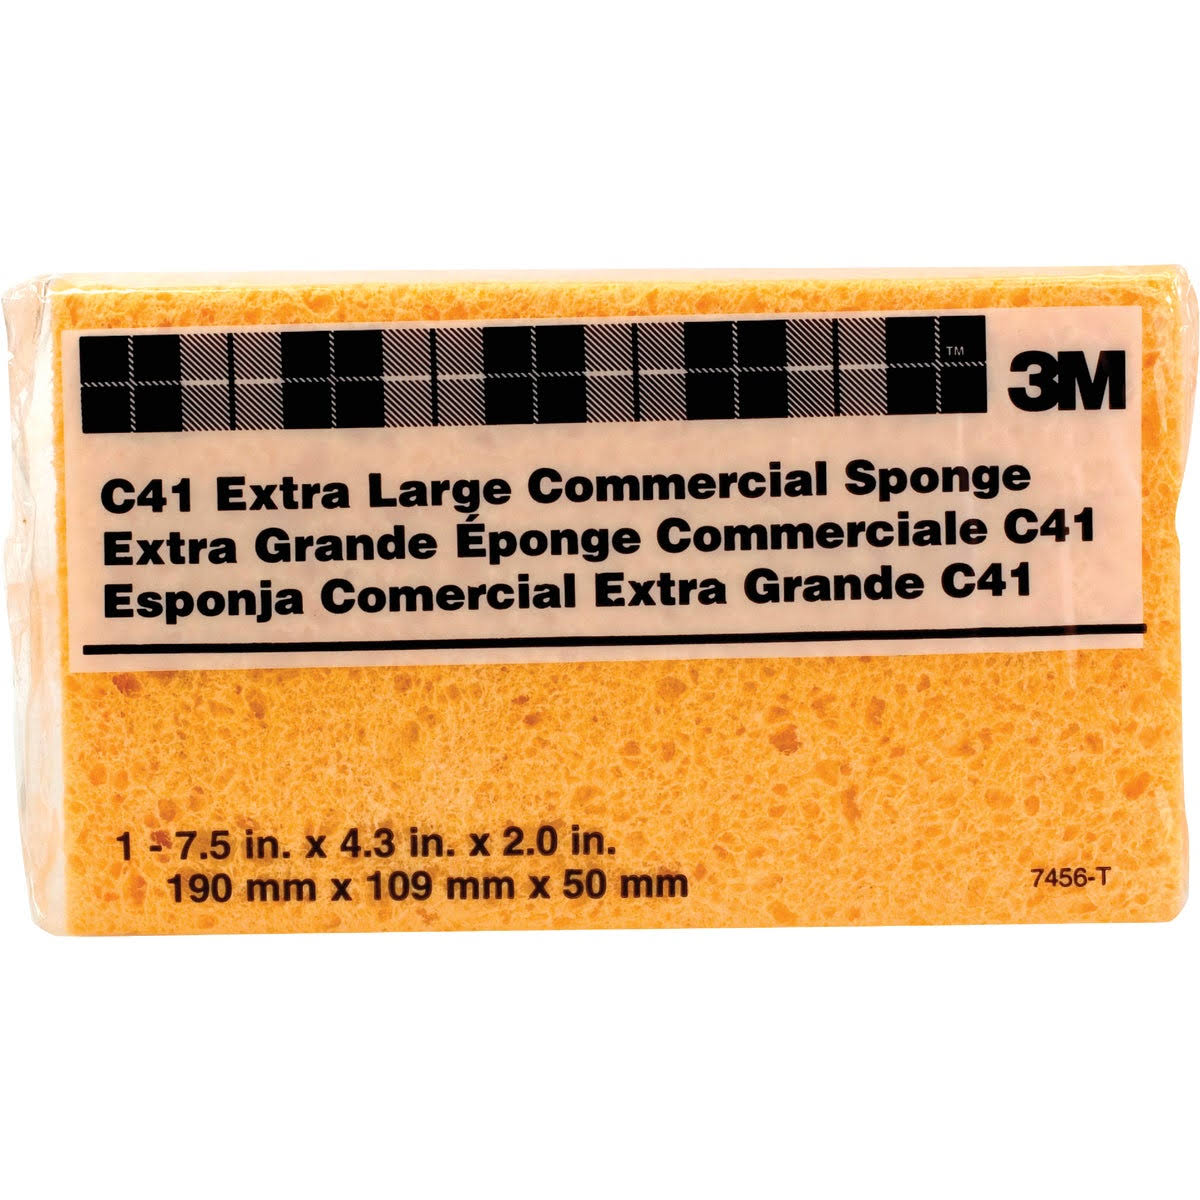 3M C41 7456-T Commercial Sponges - X-Large